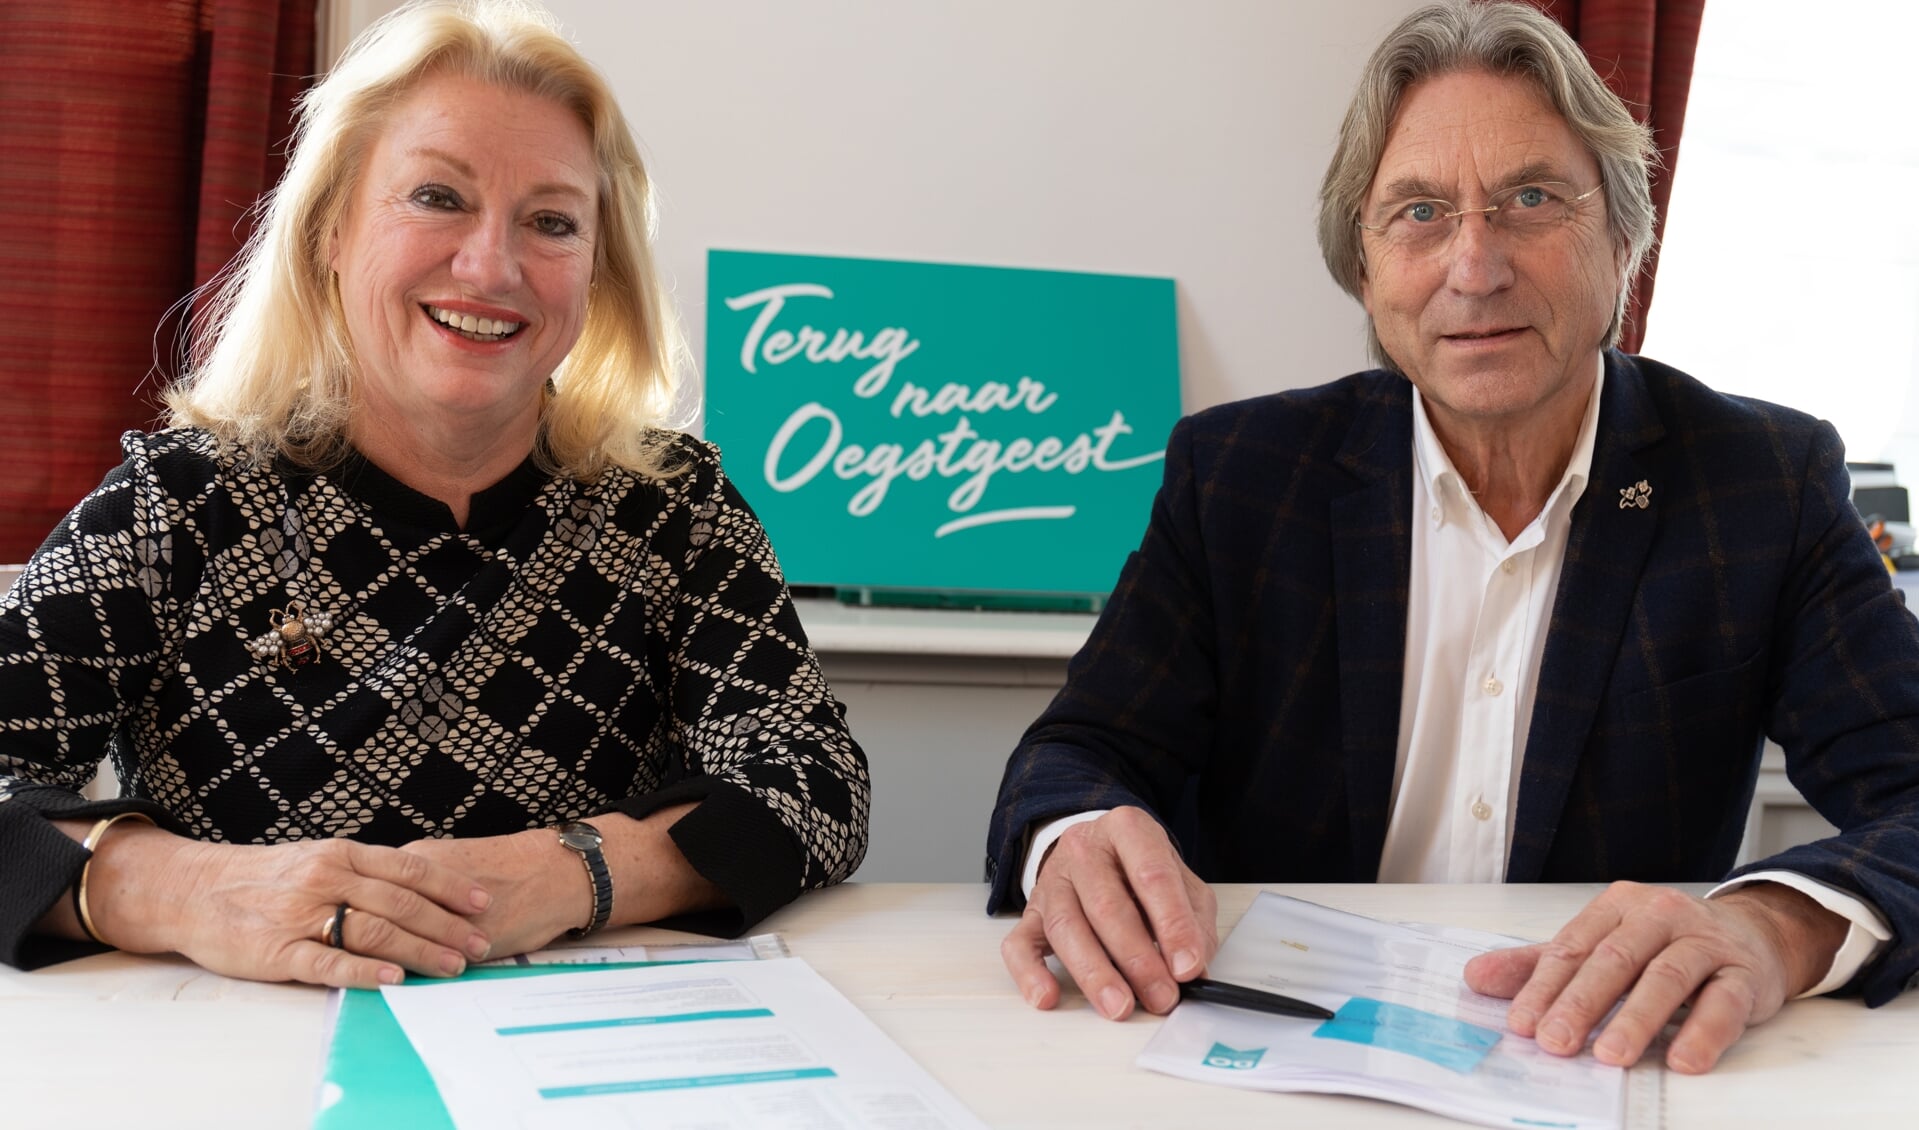 Dorpsmarketeer Marjolijn van der Jagt en voorzitter stichting Dorpsmarketing Oegstgeest Hans Ludo van Mierlo zijn enthousiast over de actie 'Terug naar Oegstgeest'.